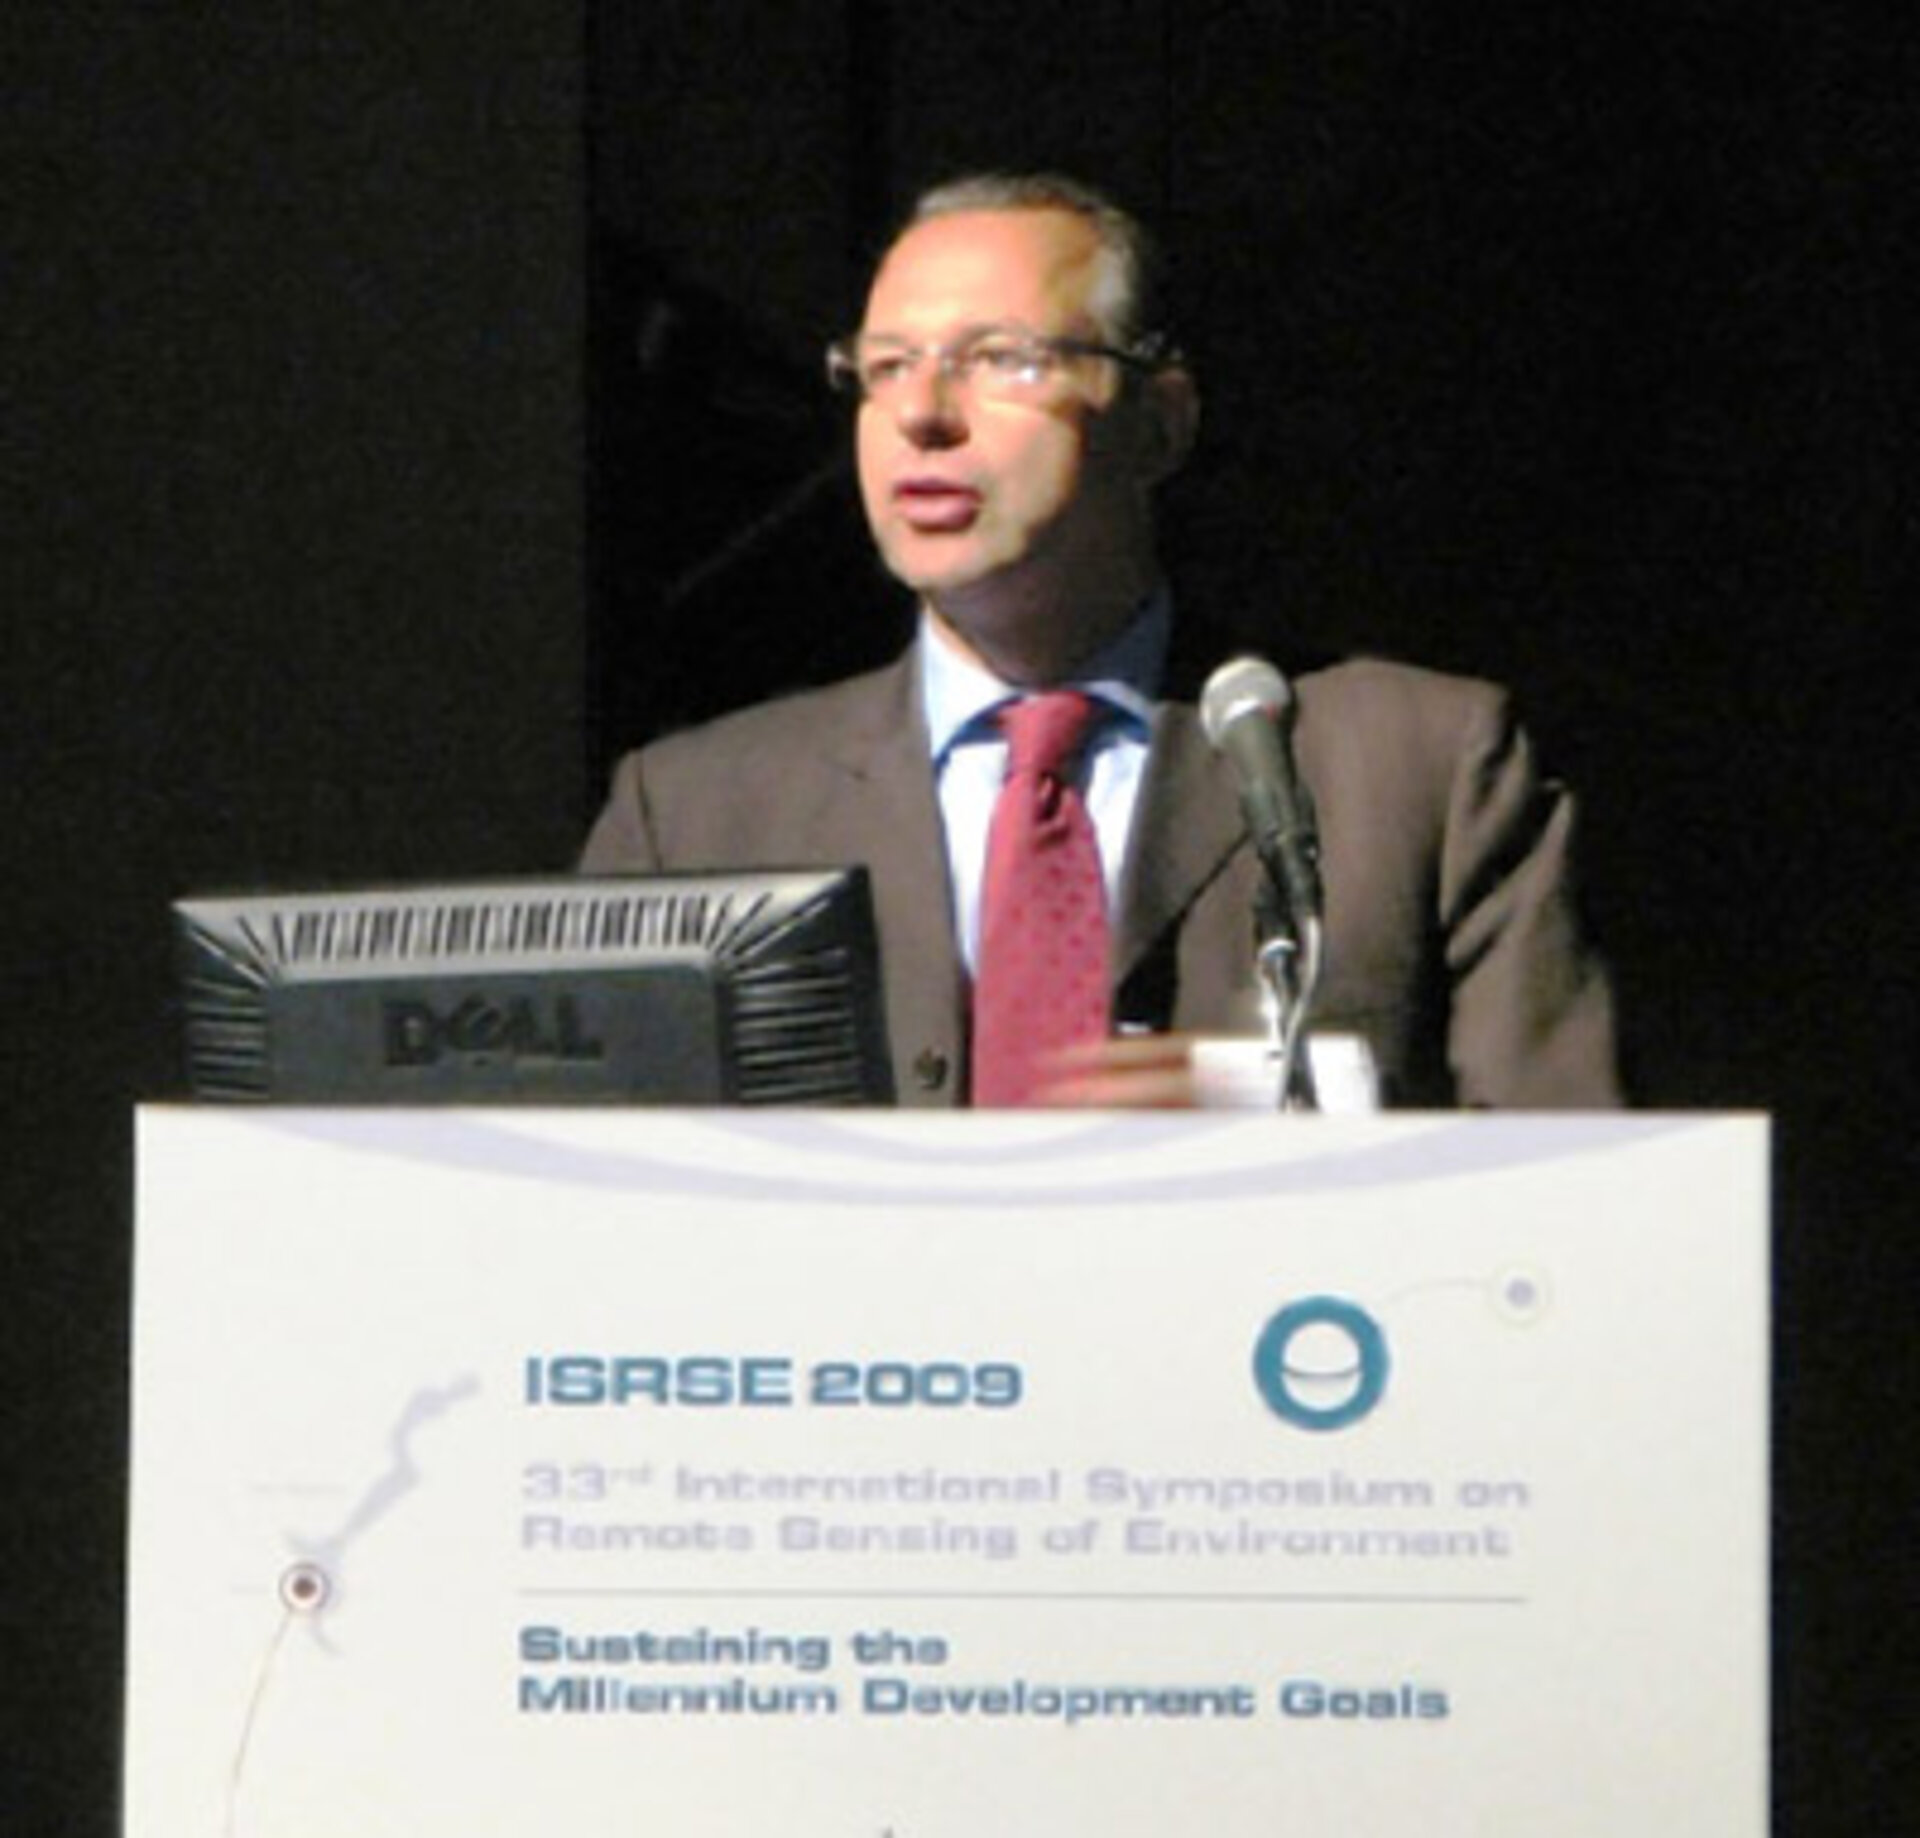 Josef Aschbacher speaking at ISRSE